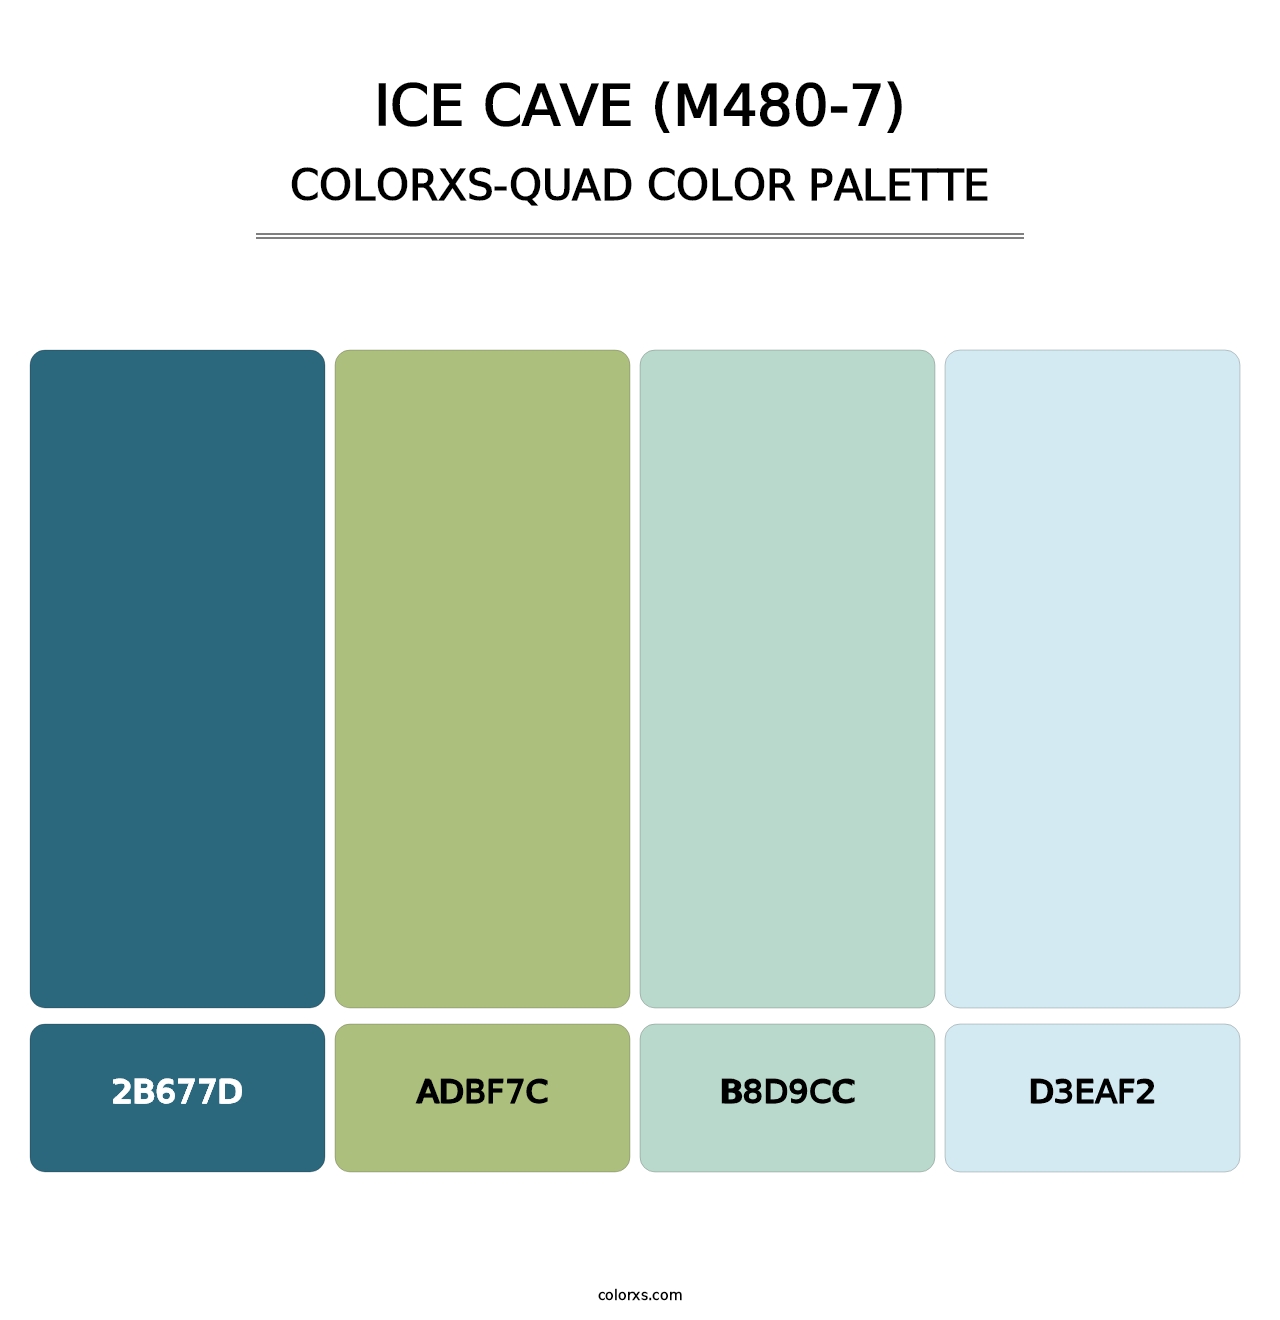 Ice Cave (M480-7) - Colorxs Quad Palette